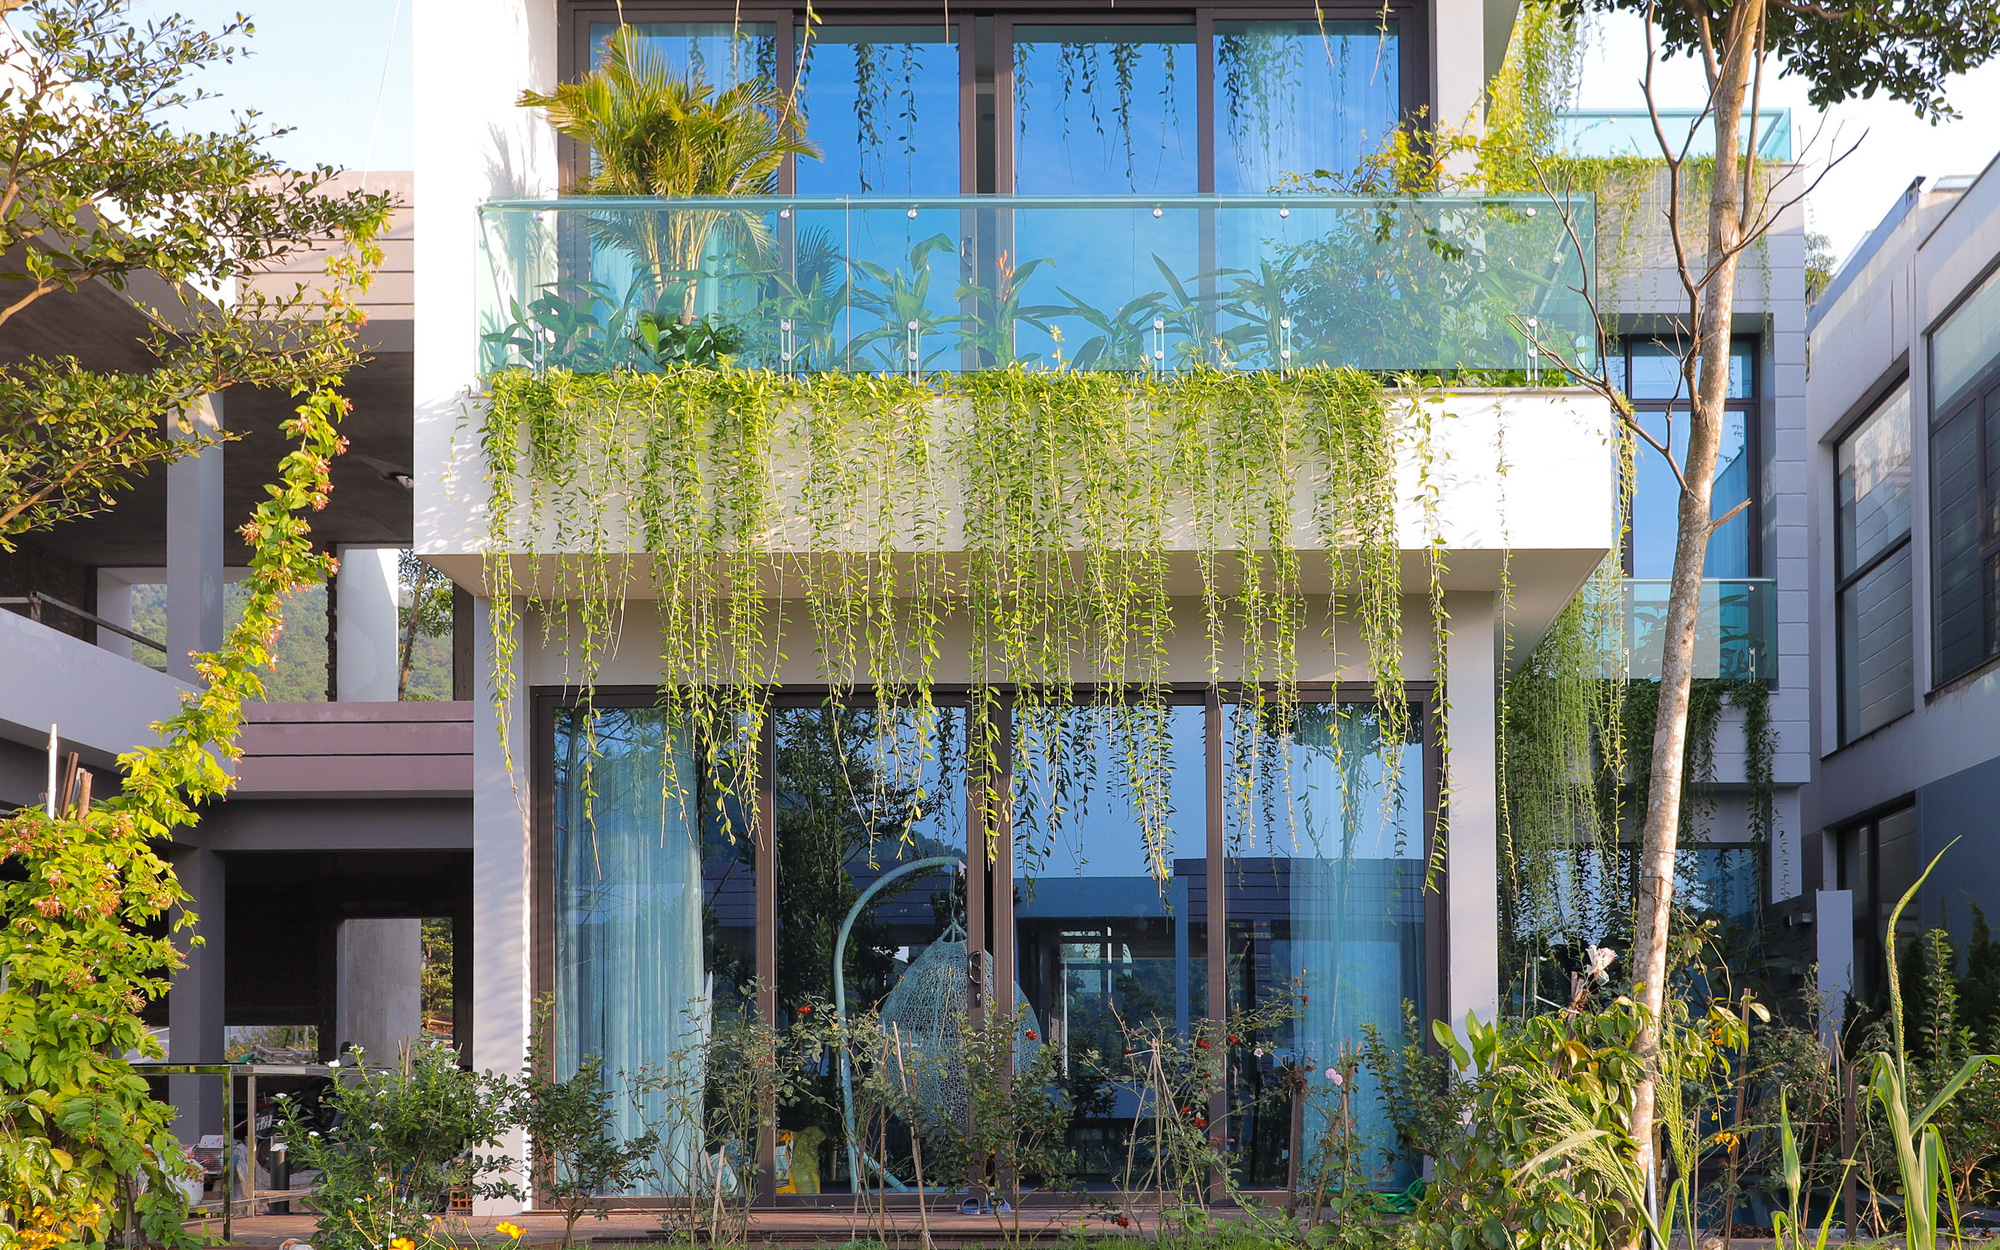 Căn nhà nhiều cây xanh với mảnh vườn bé xinh ở ngoại thành Hà Nội có chi phí hoàn thiện 3 tỷ đồng